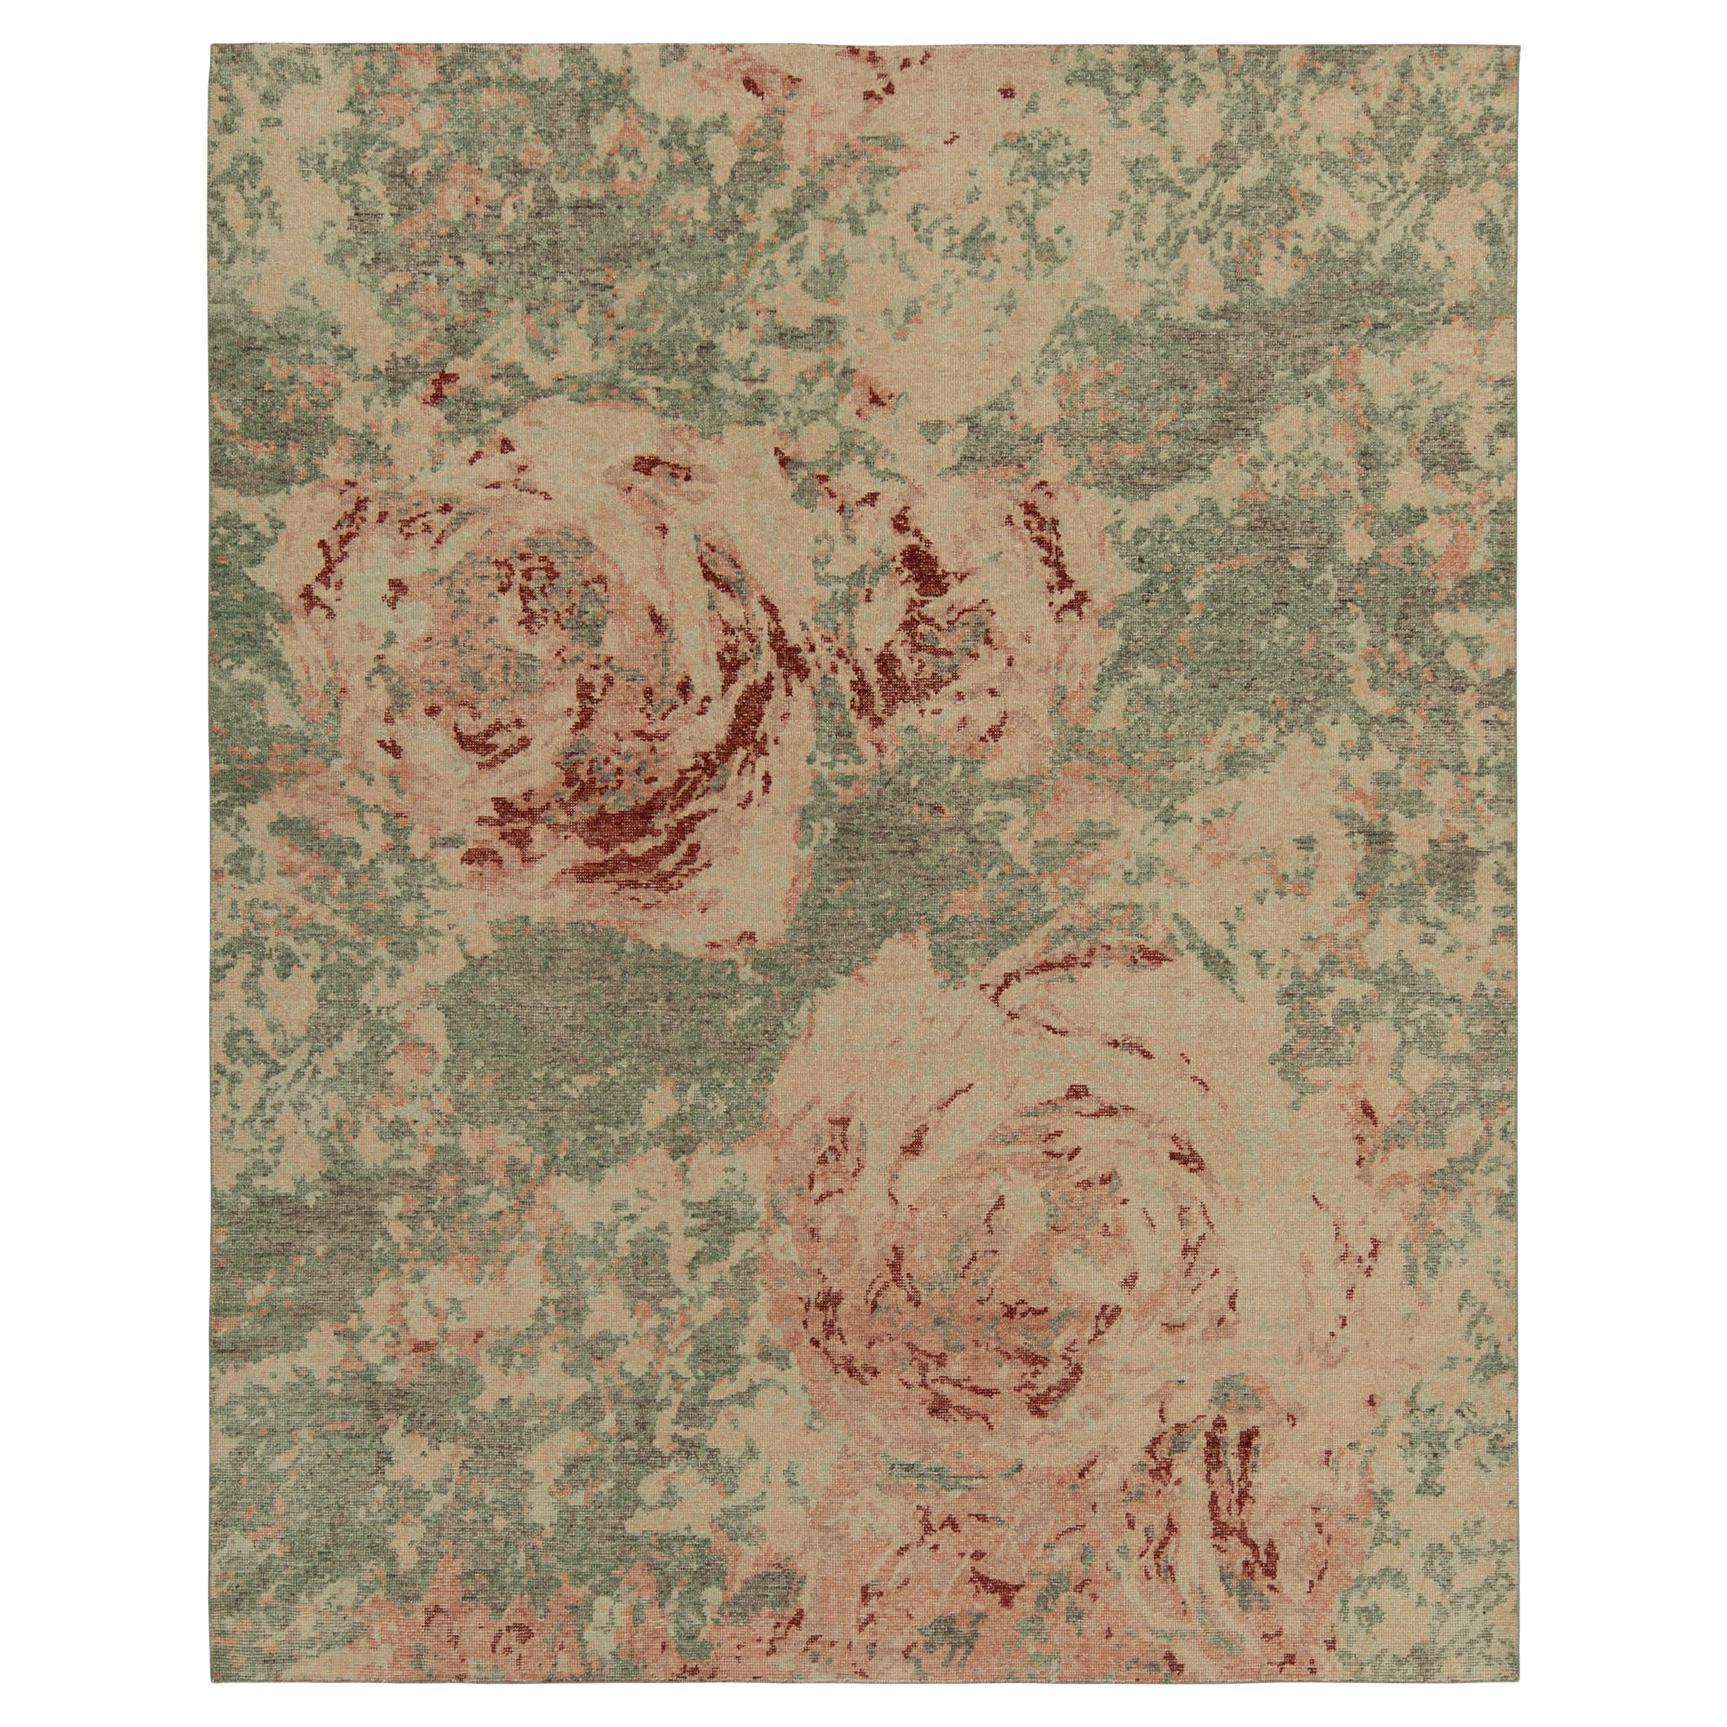 Rug & Kilim's Distressed Style Rug en vert, rose motif expressionniste abstrait